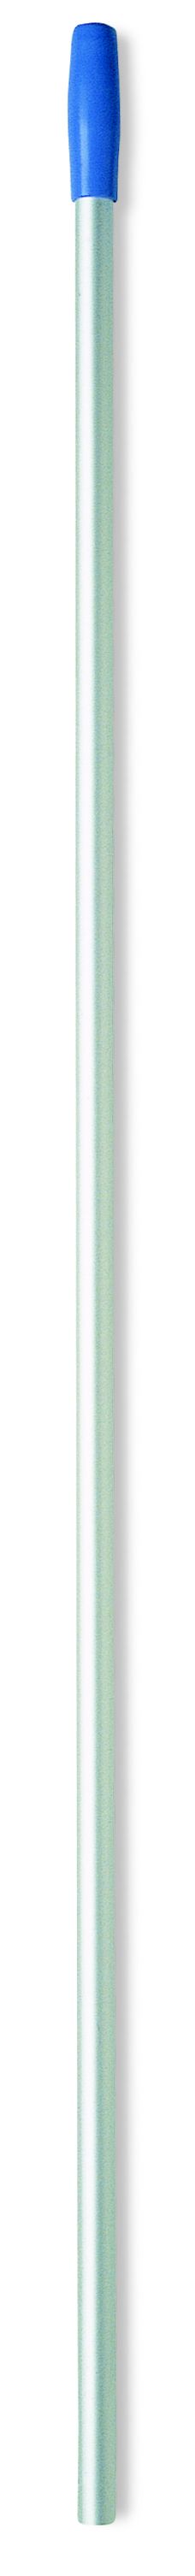 Euromop алюминиевая рукоятка для держателя мопа, с отверстиями, д23см x 145см, синяя рукоятка